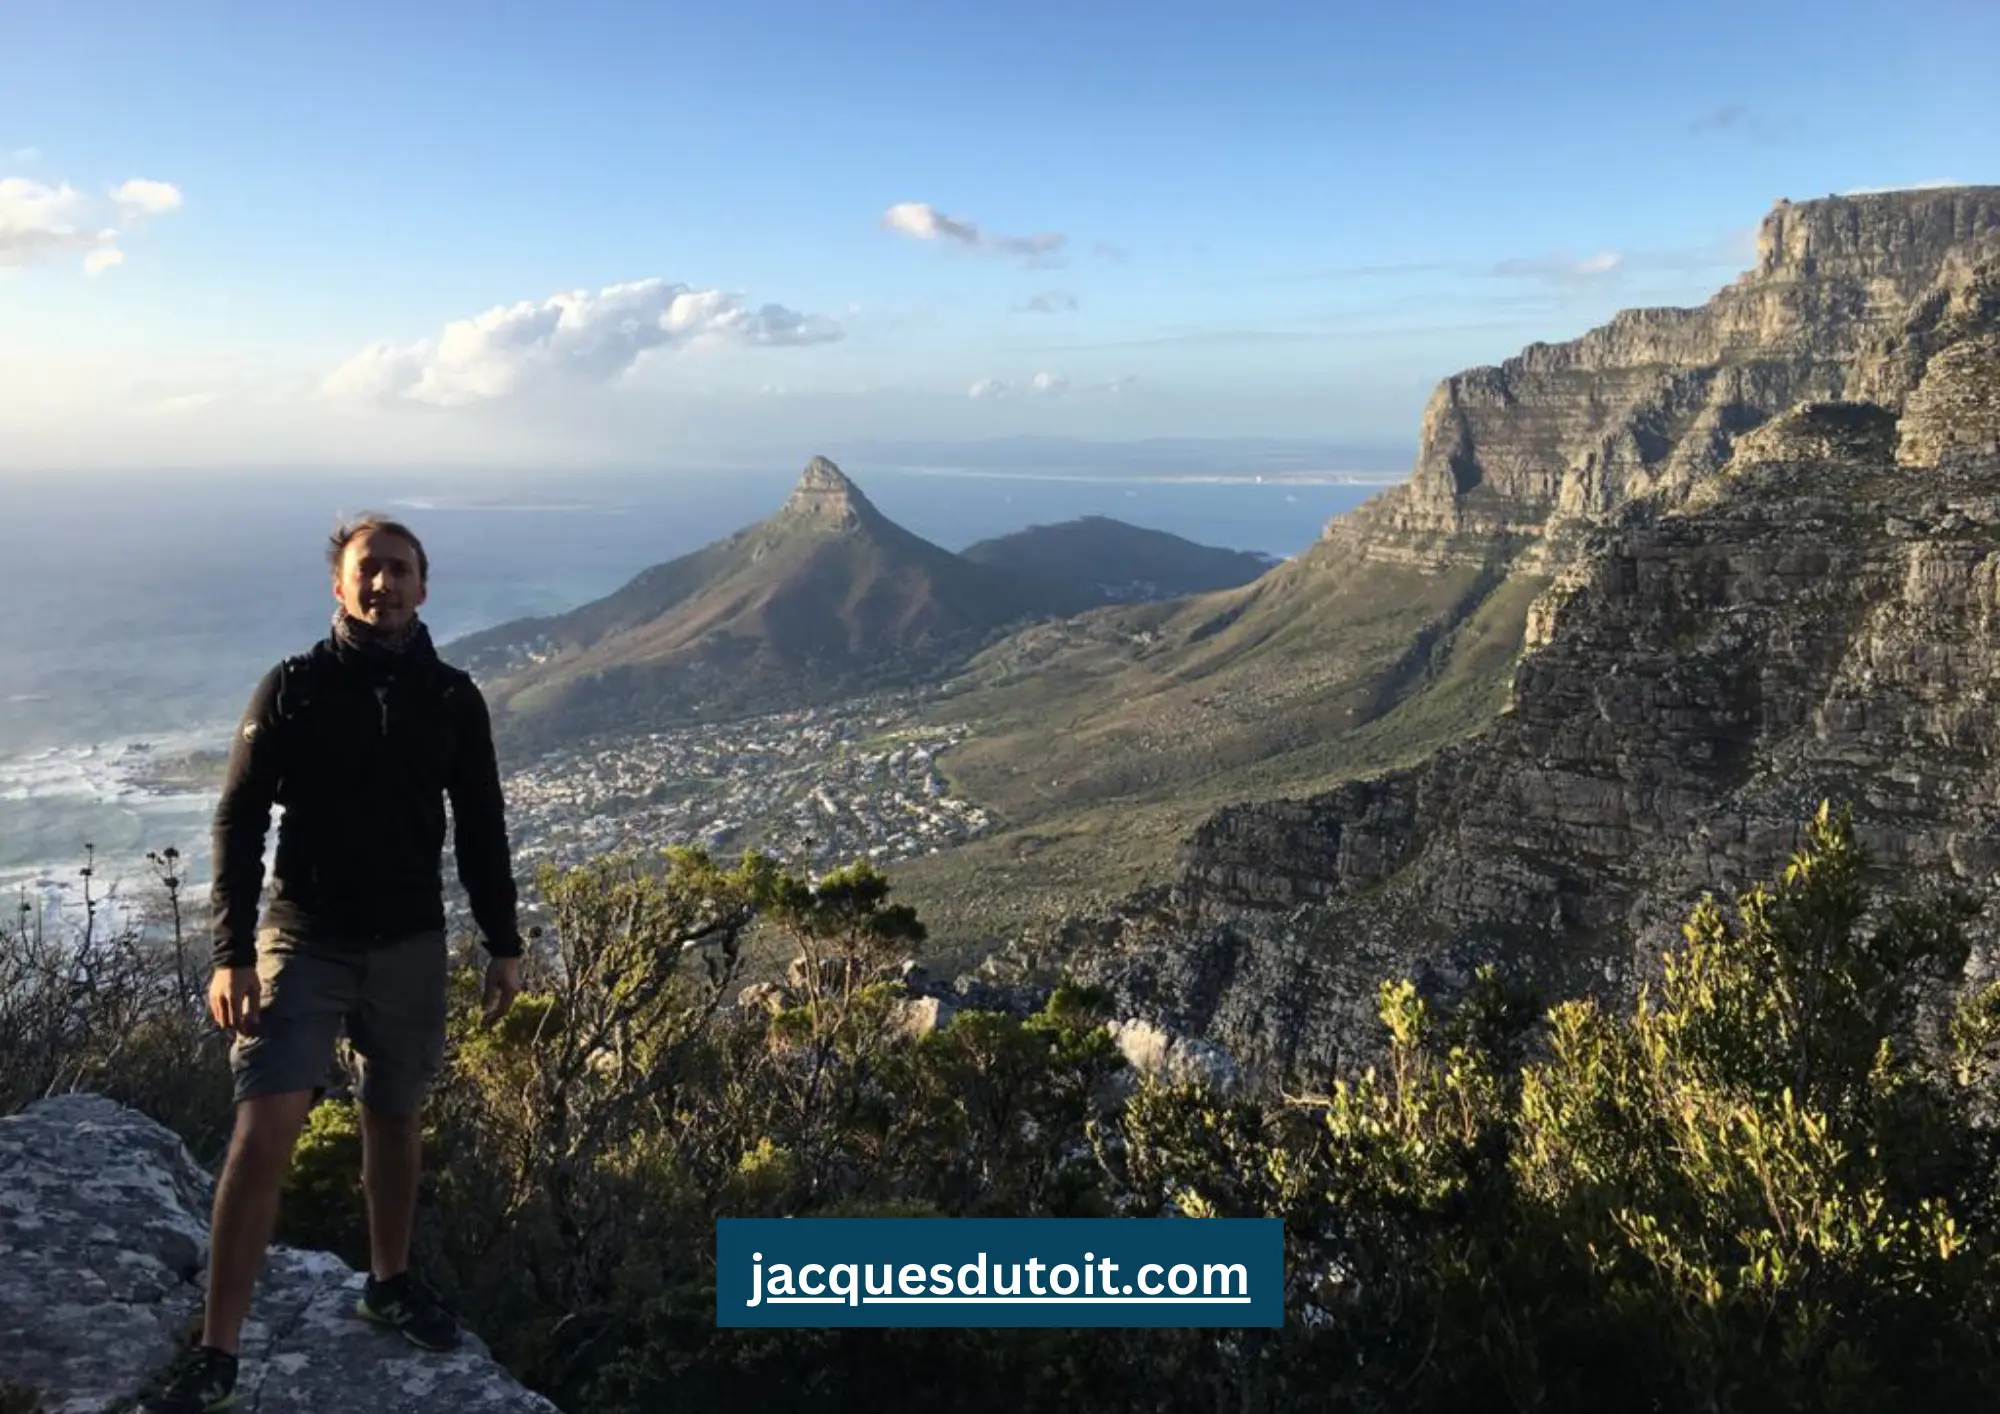 Jacques du Toit on Table Mountain, Cape Town, South Africa. www.jacquesdutoit.com